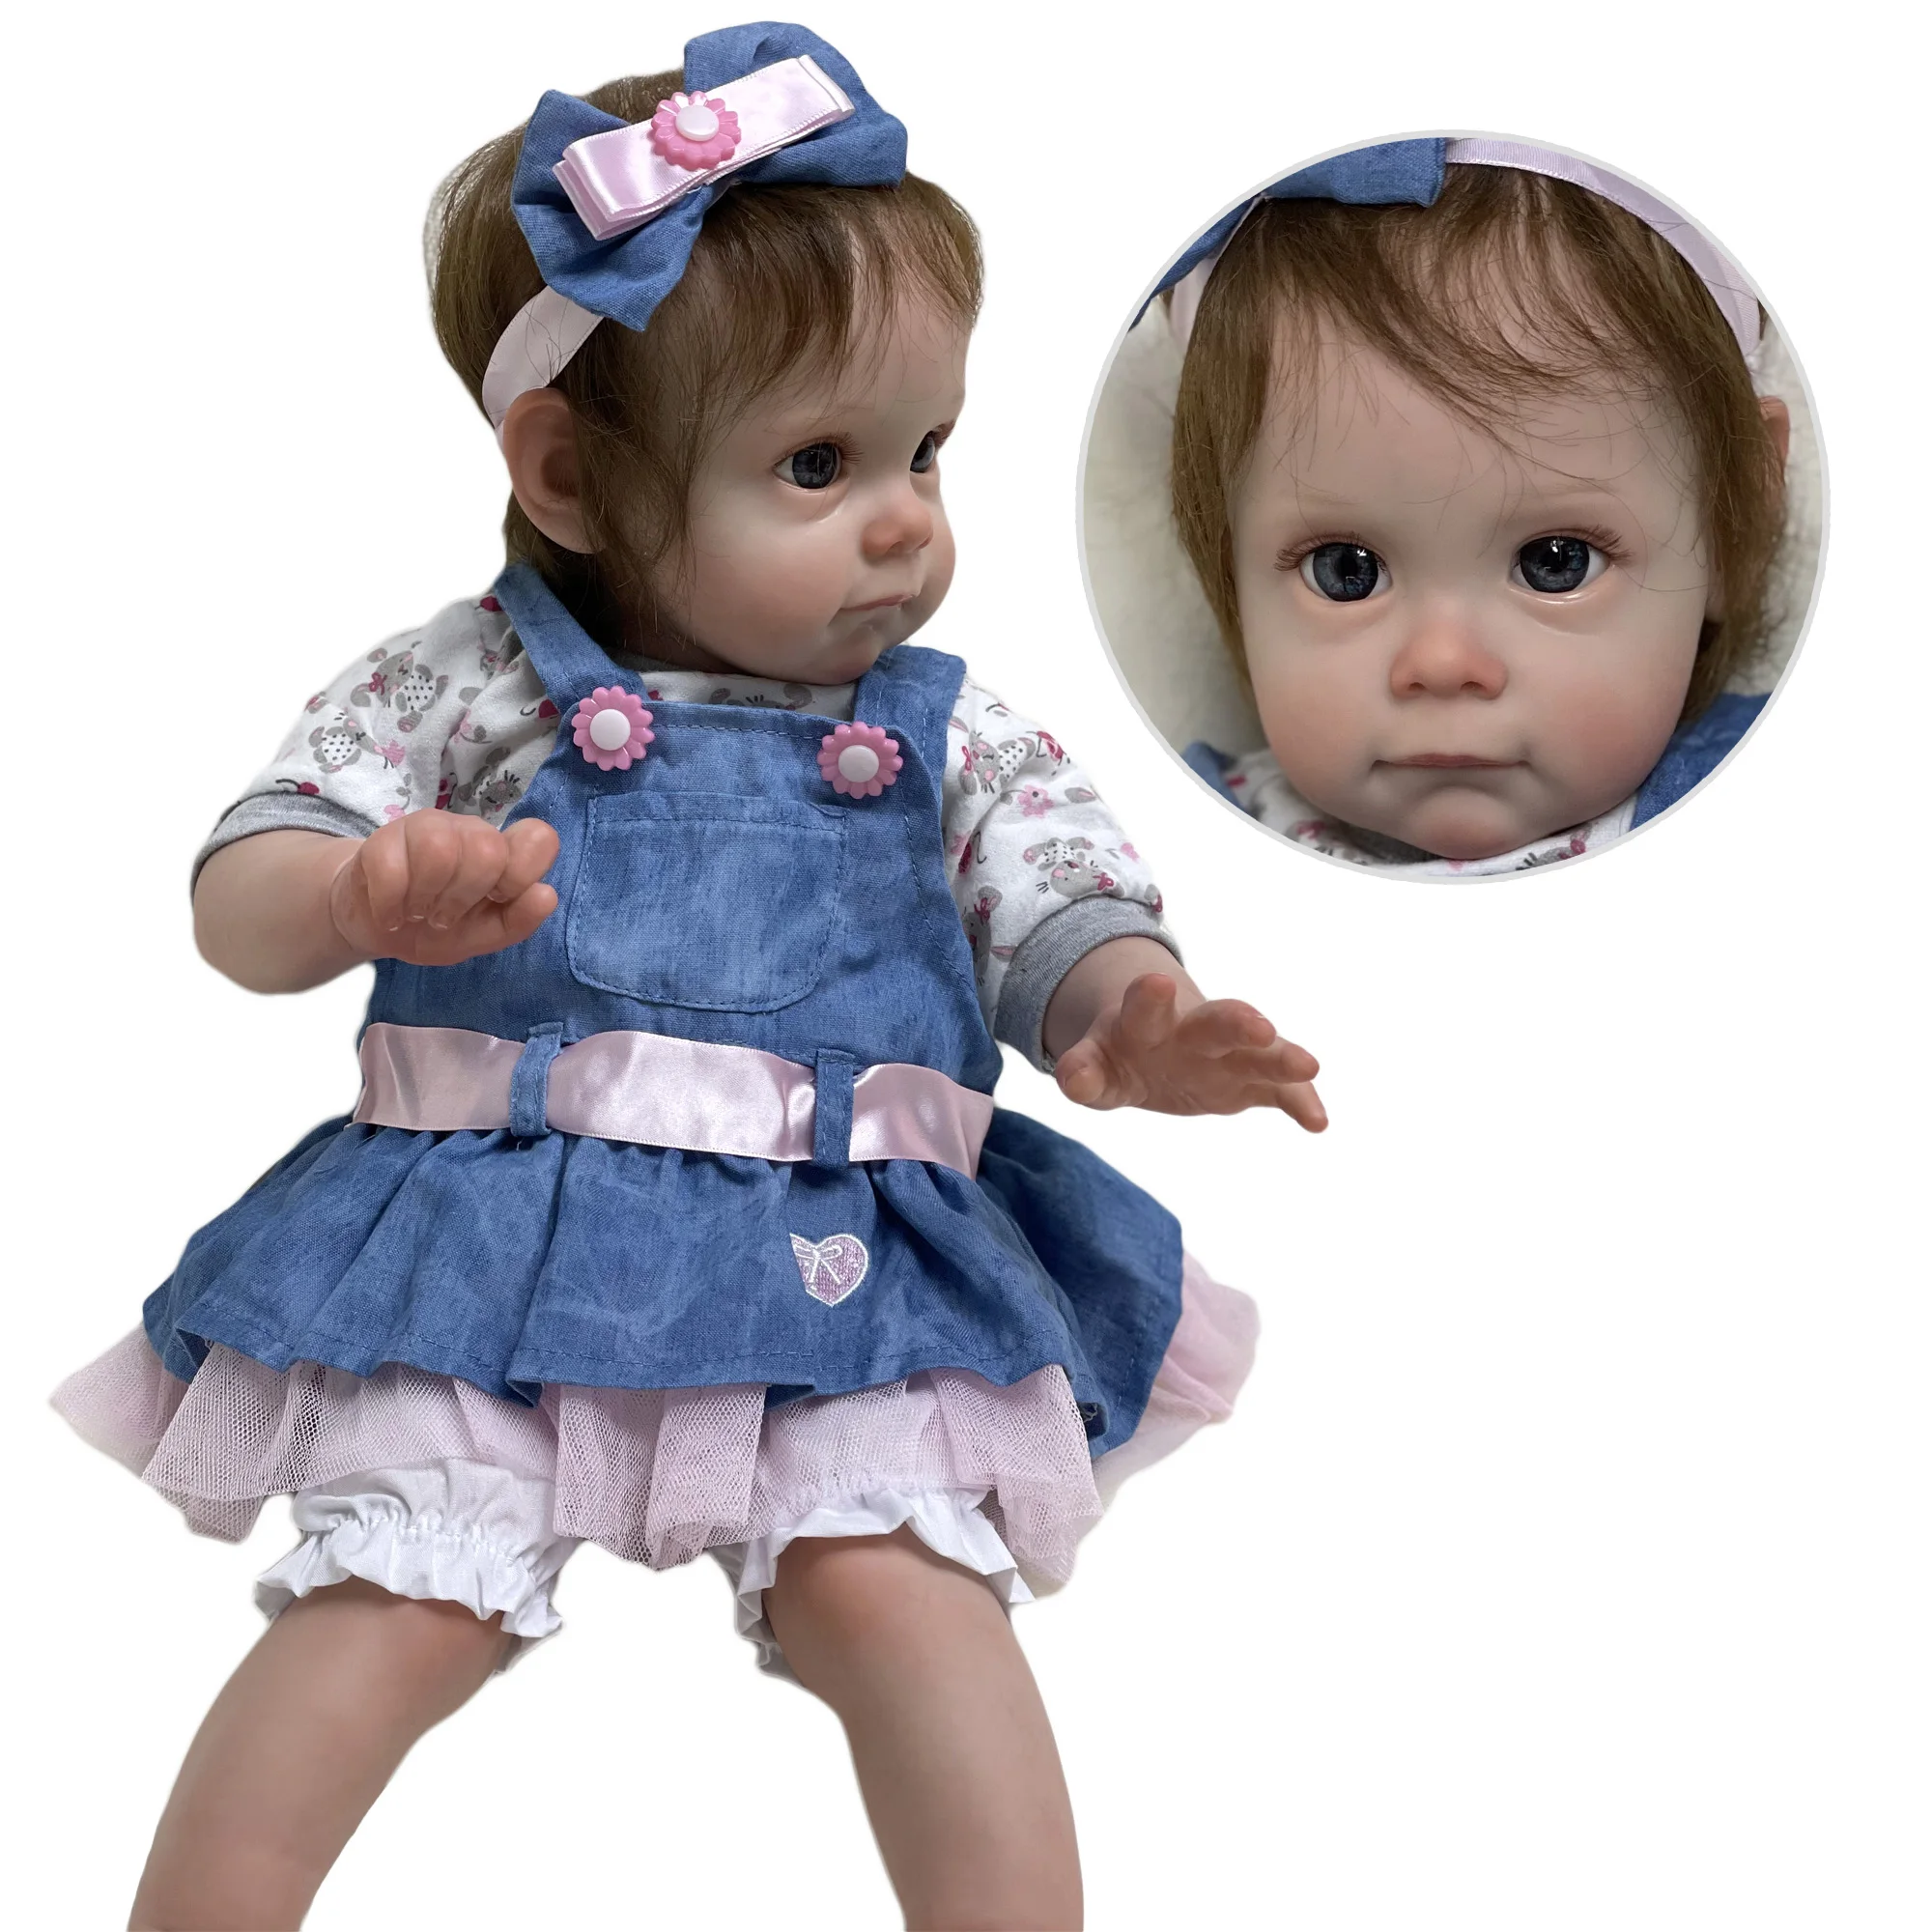 

Children Toy Gift Maggie Toddler Reborn Dolls Handmade Lifelike Reborn Girl Muñecos Reborn Terminados Completos